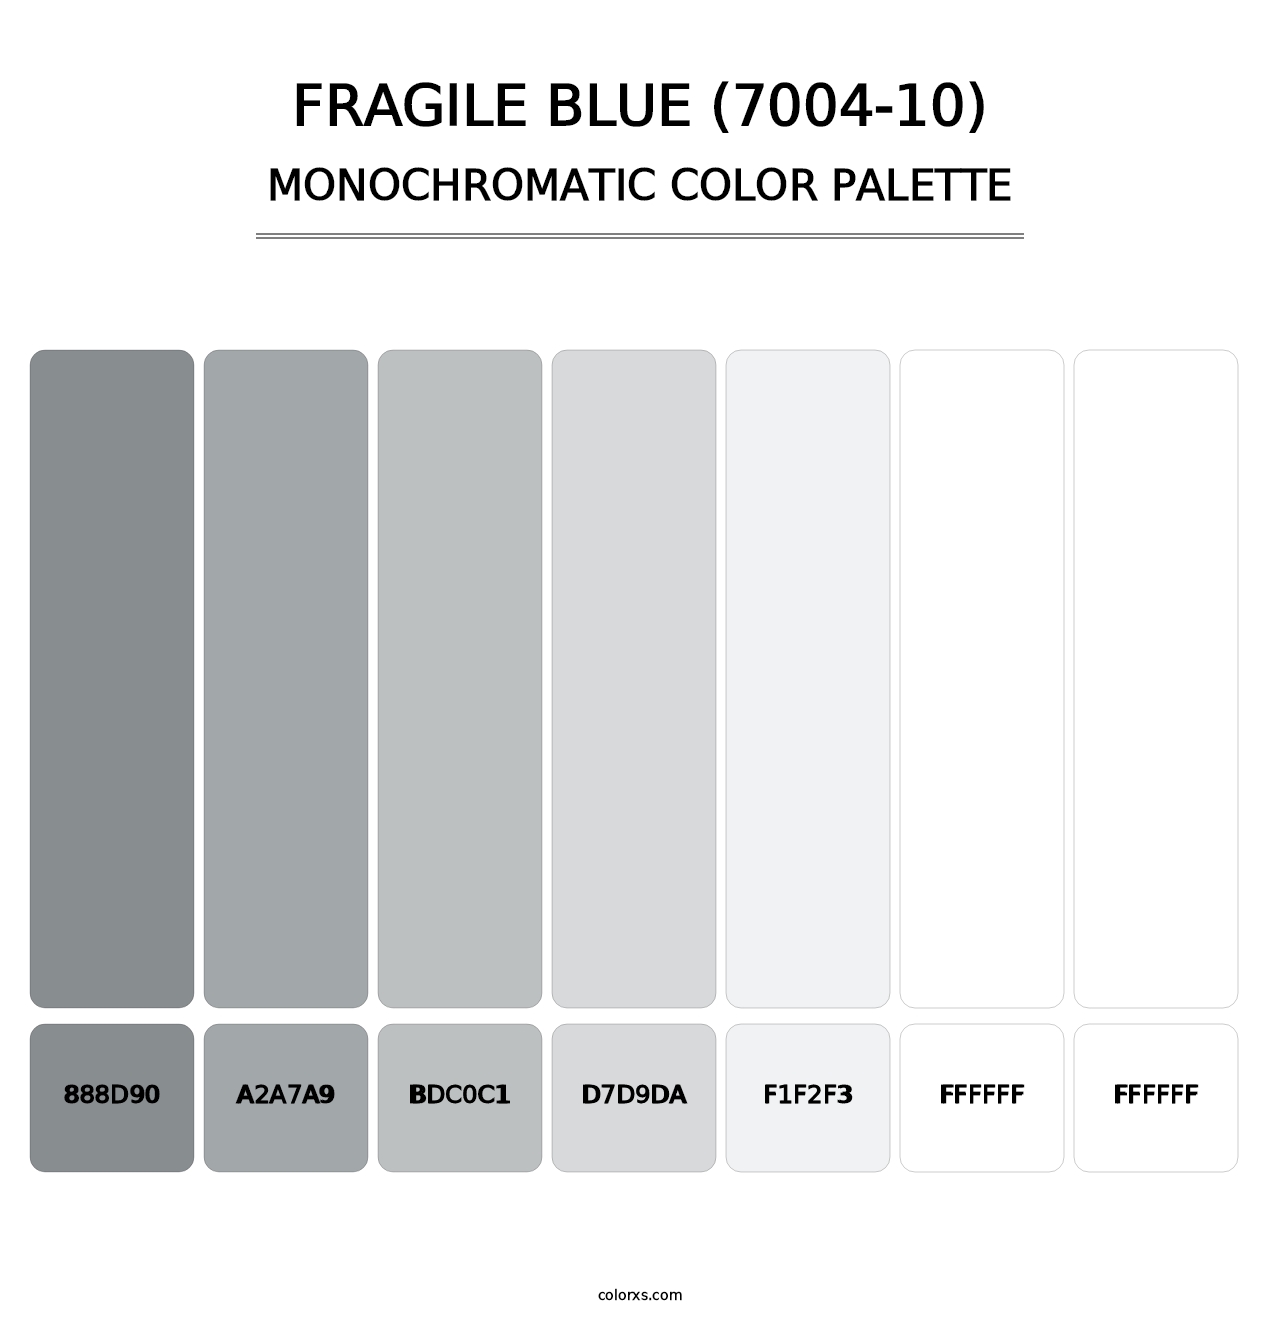 Fragile Blue (7004-10) - Monochromatic Color Palette